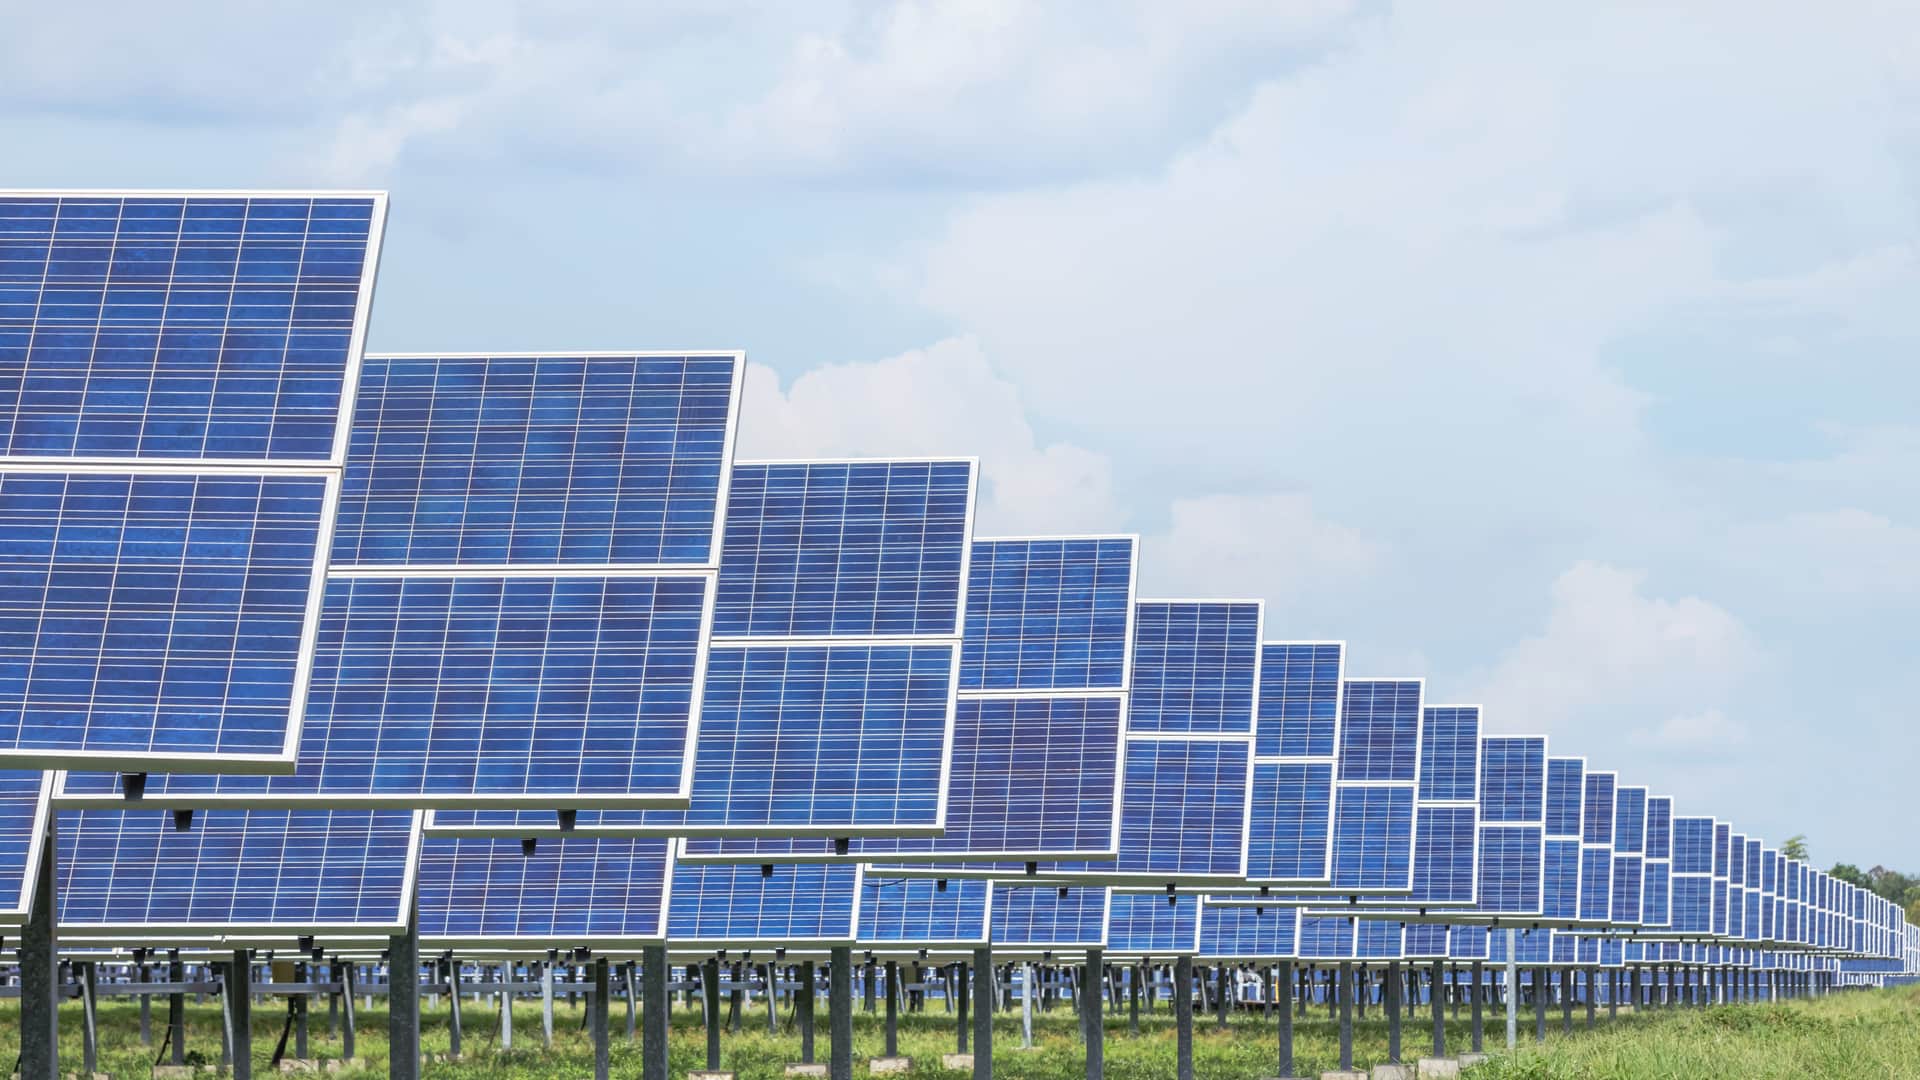 Intrumentos de energía solar montados por los instaladores